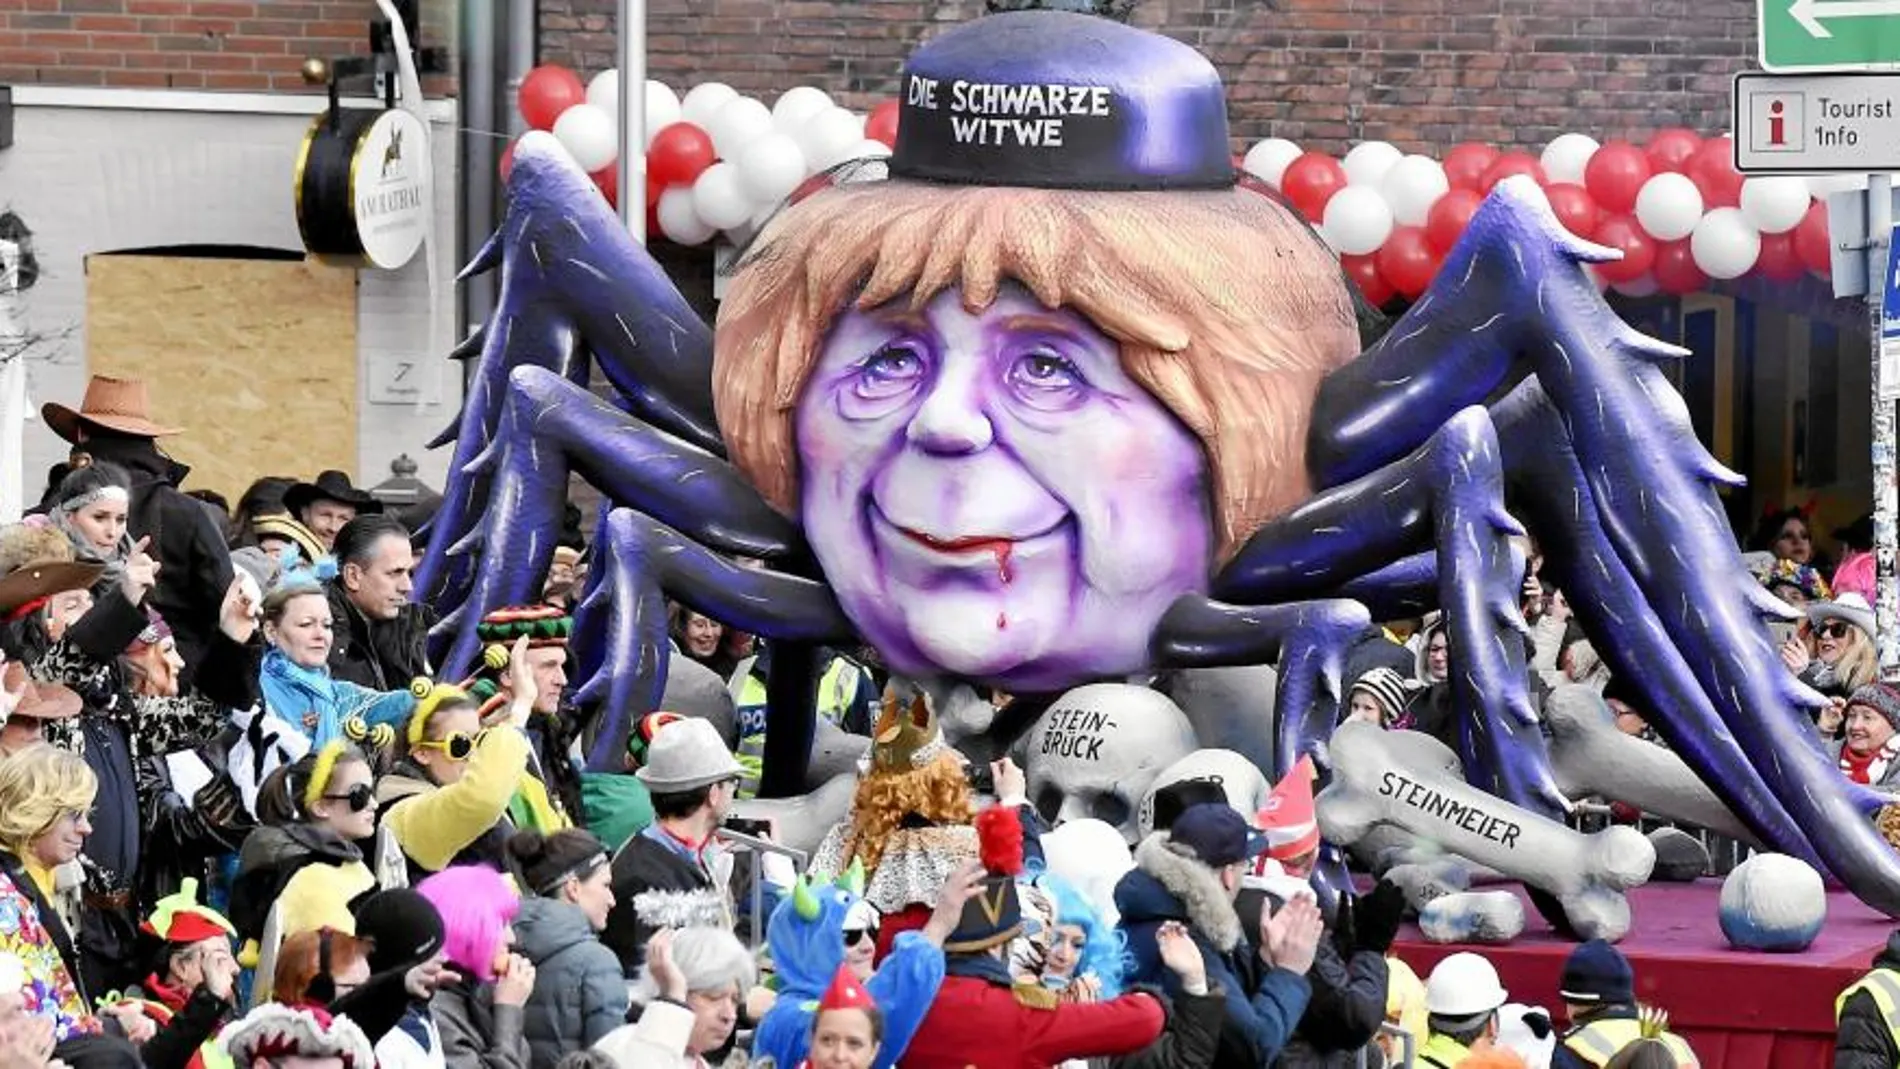 El carnaval de Düsseldorf representa a la canciller alemana, Angela Merkel, como una enorme araña que devora a sus rivales políticos